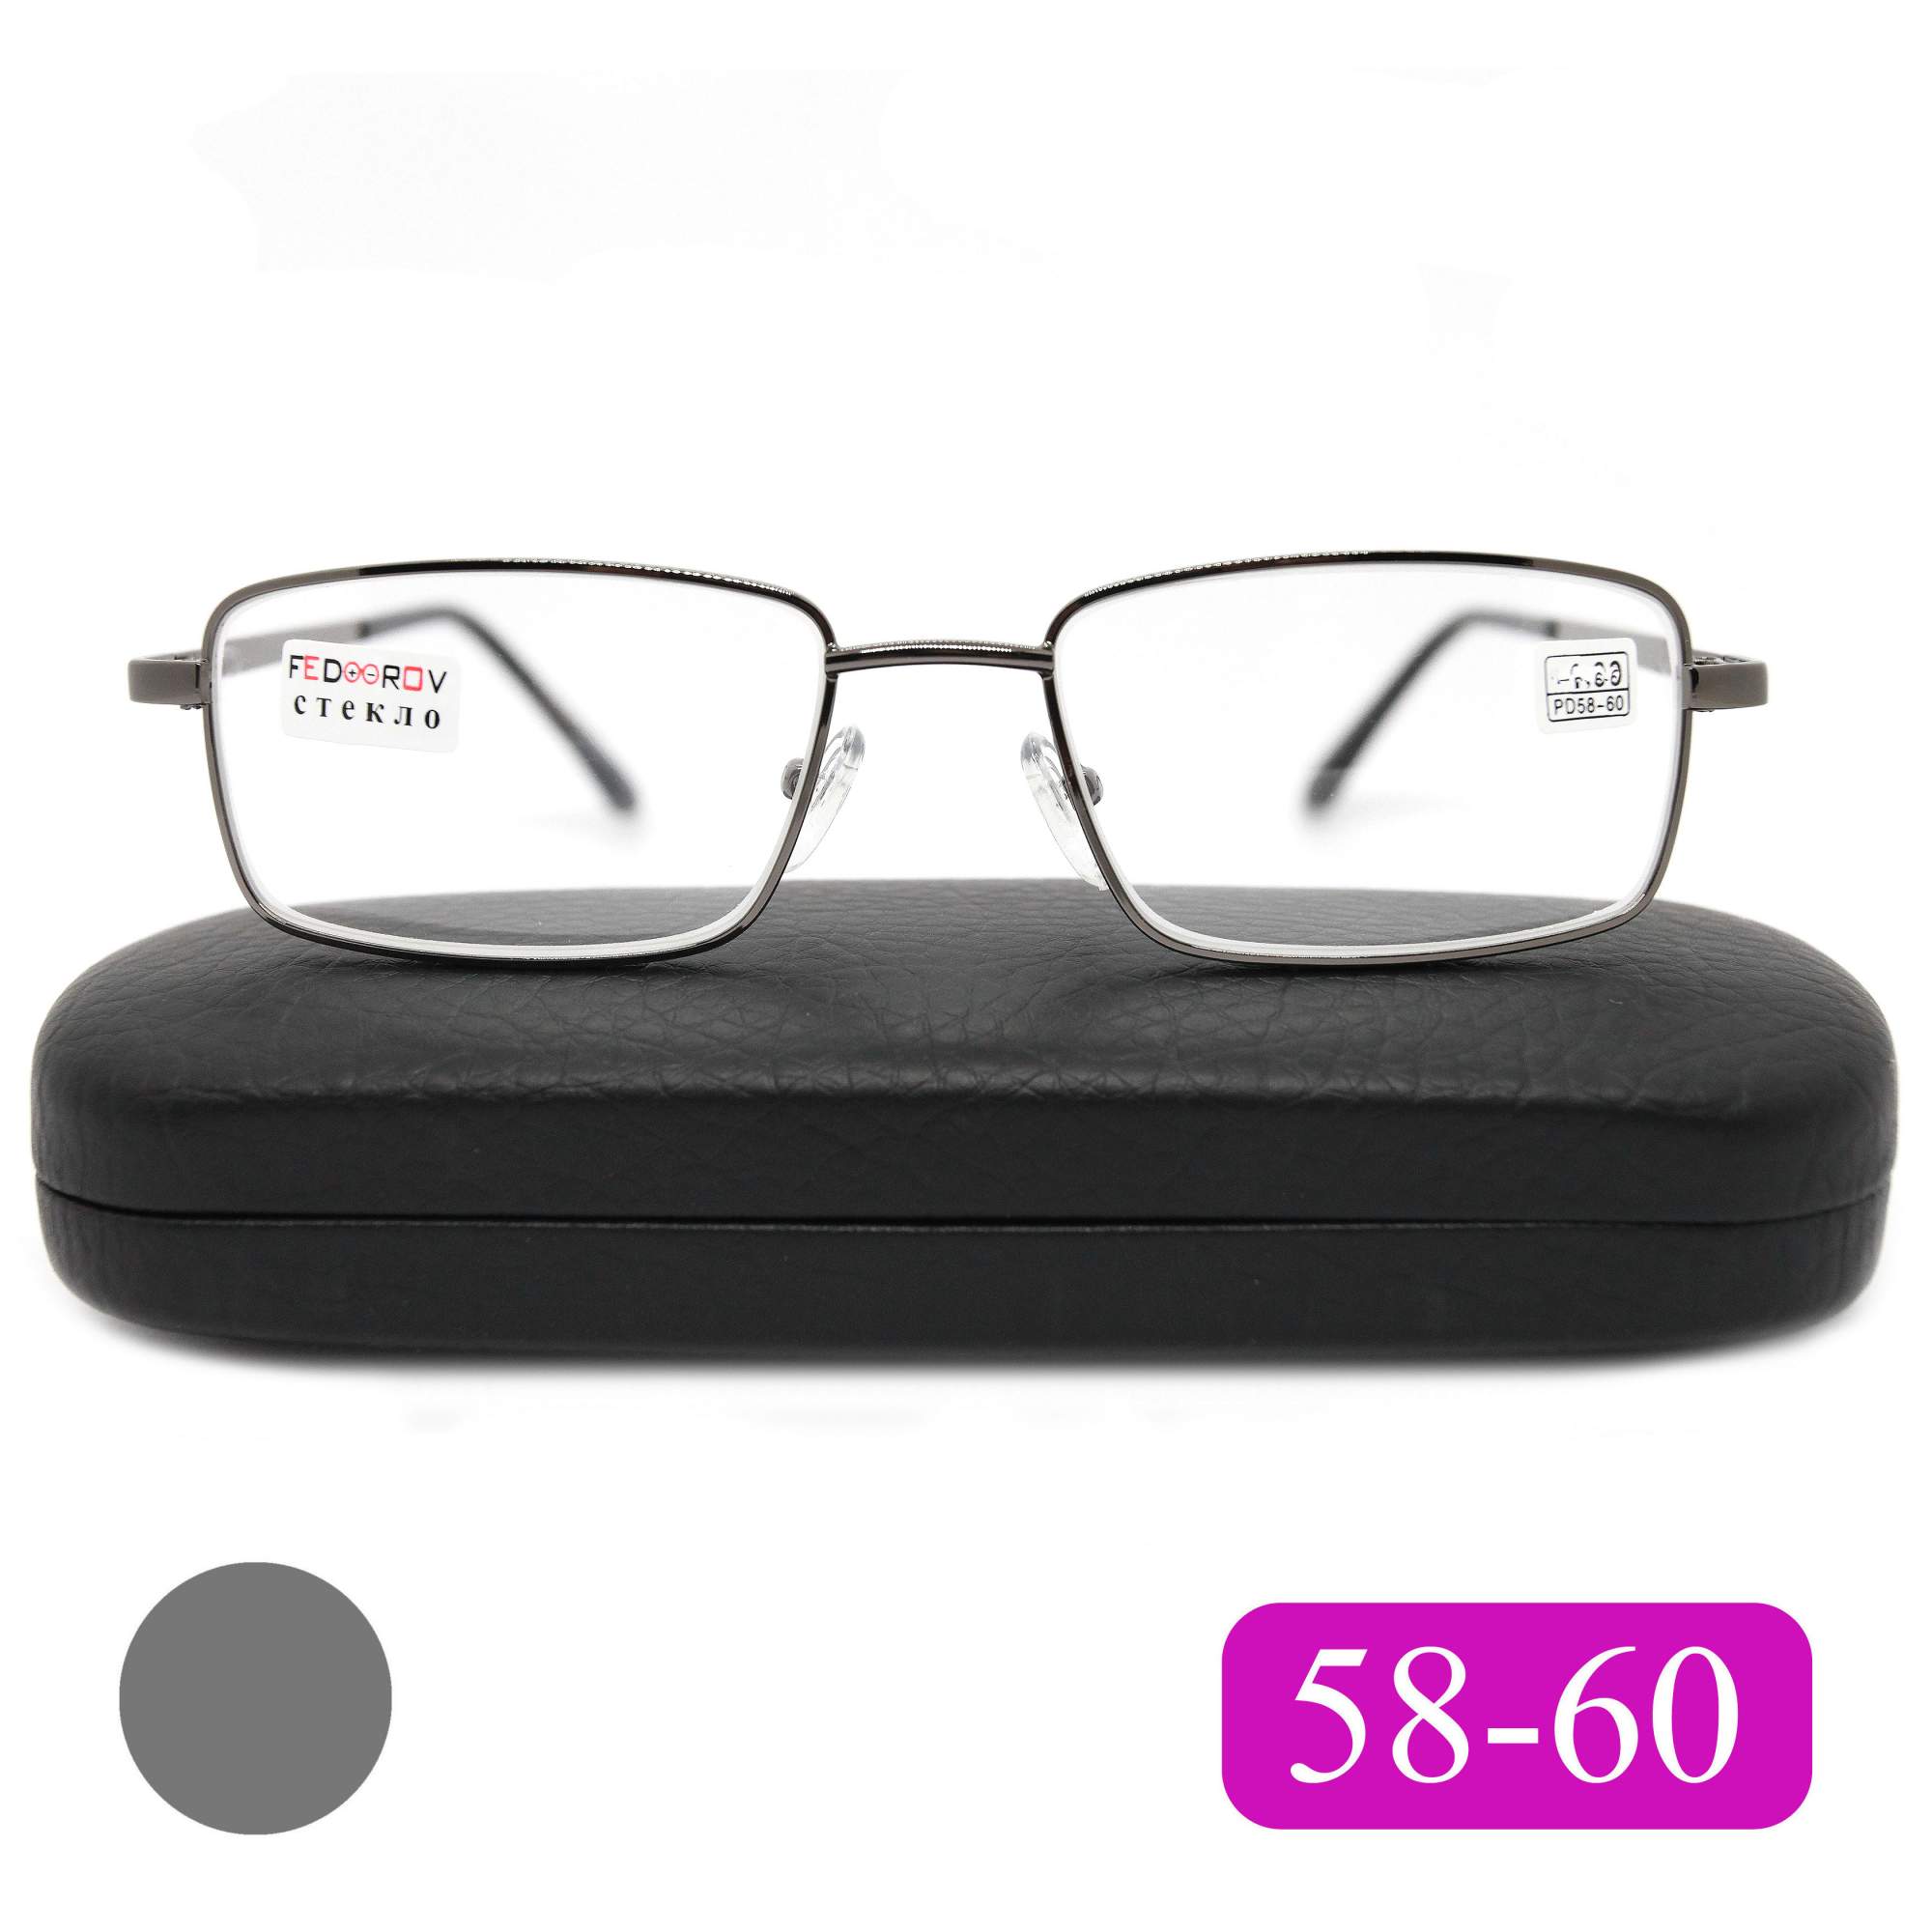 Готовые очки Fedrov 569, со стеклянной линзой, +1,75, c футляром, цвет серый, РЦ 58-60